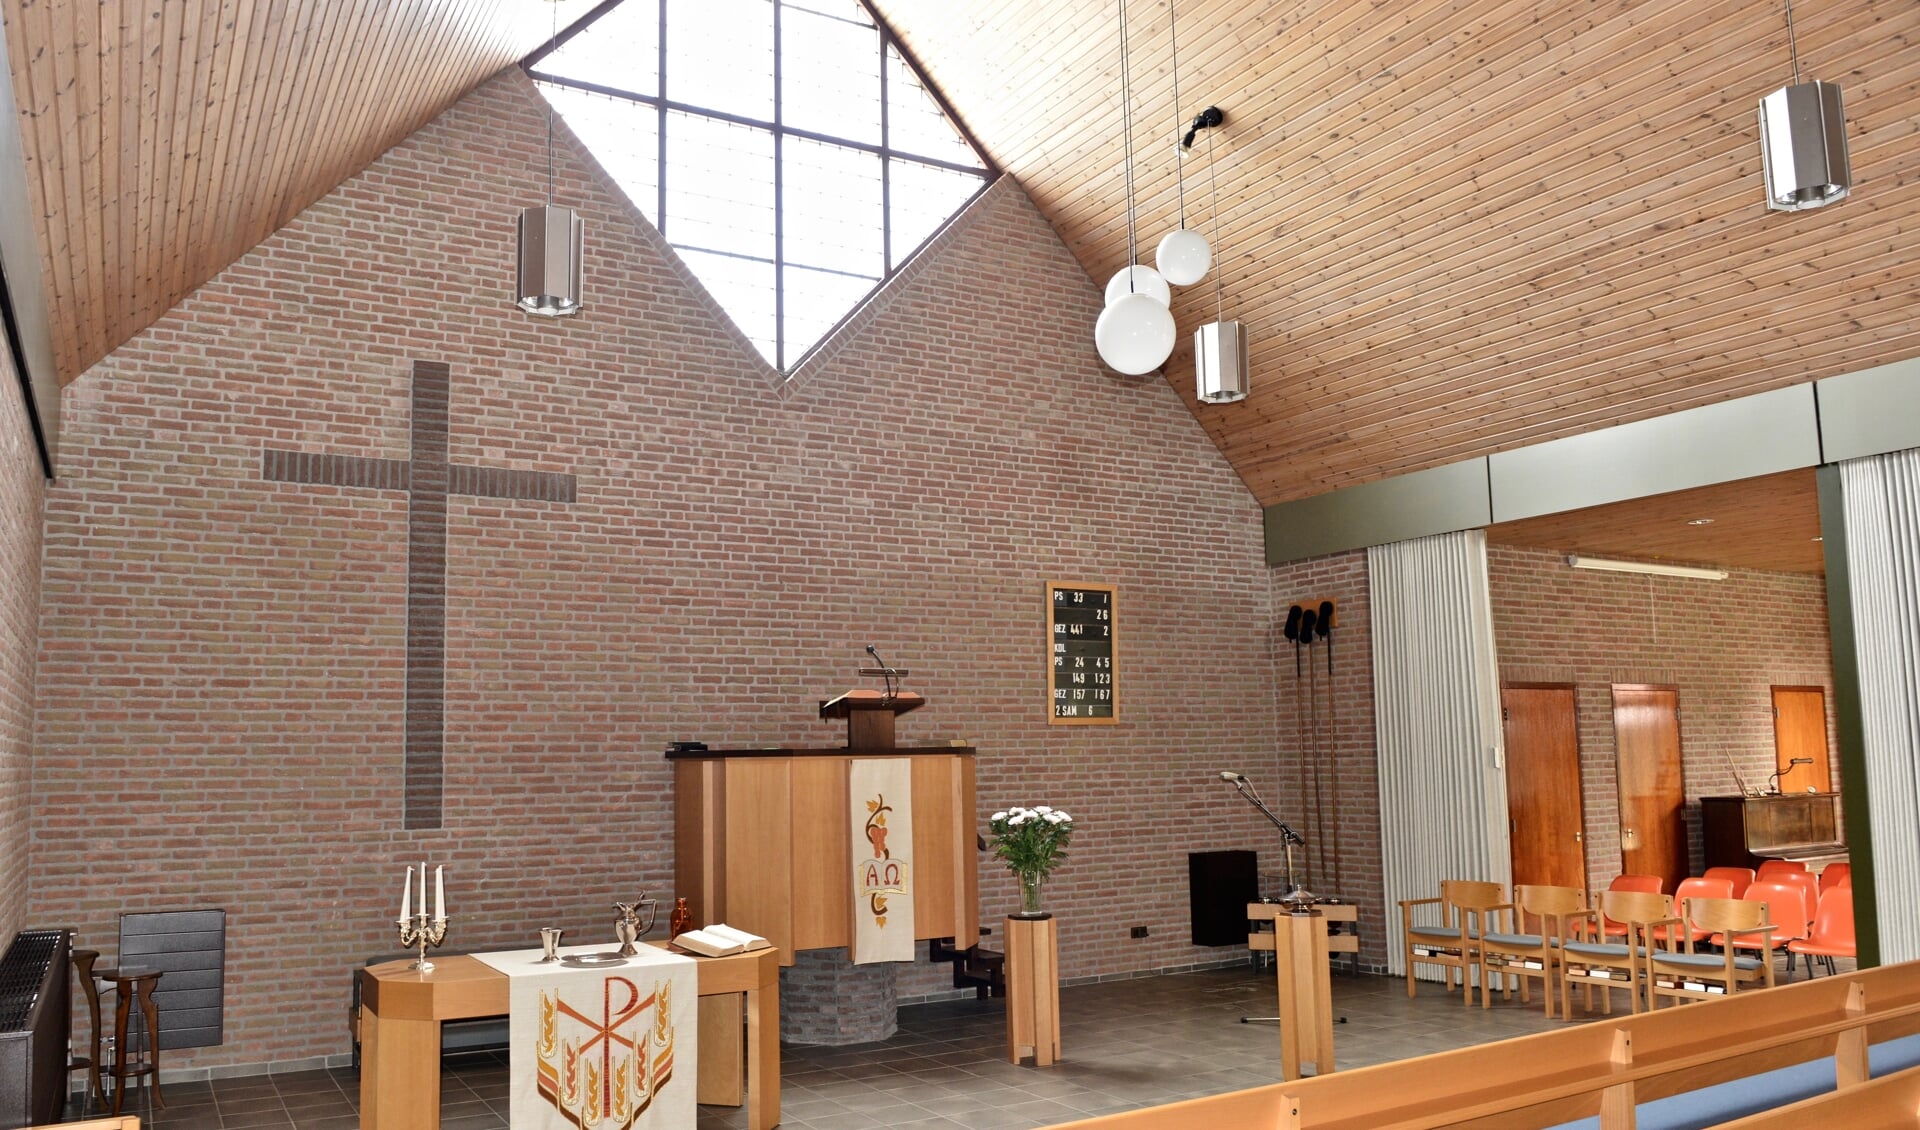 Op 2 januari 1983 vond de instituering van de Hervormde gemeente te Poeldijk plaats, waarbij de eerste kerkenraad werd bevestigd.